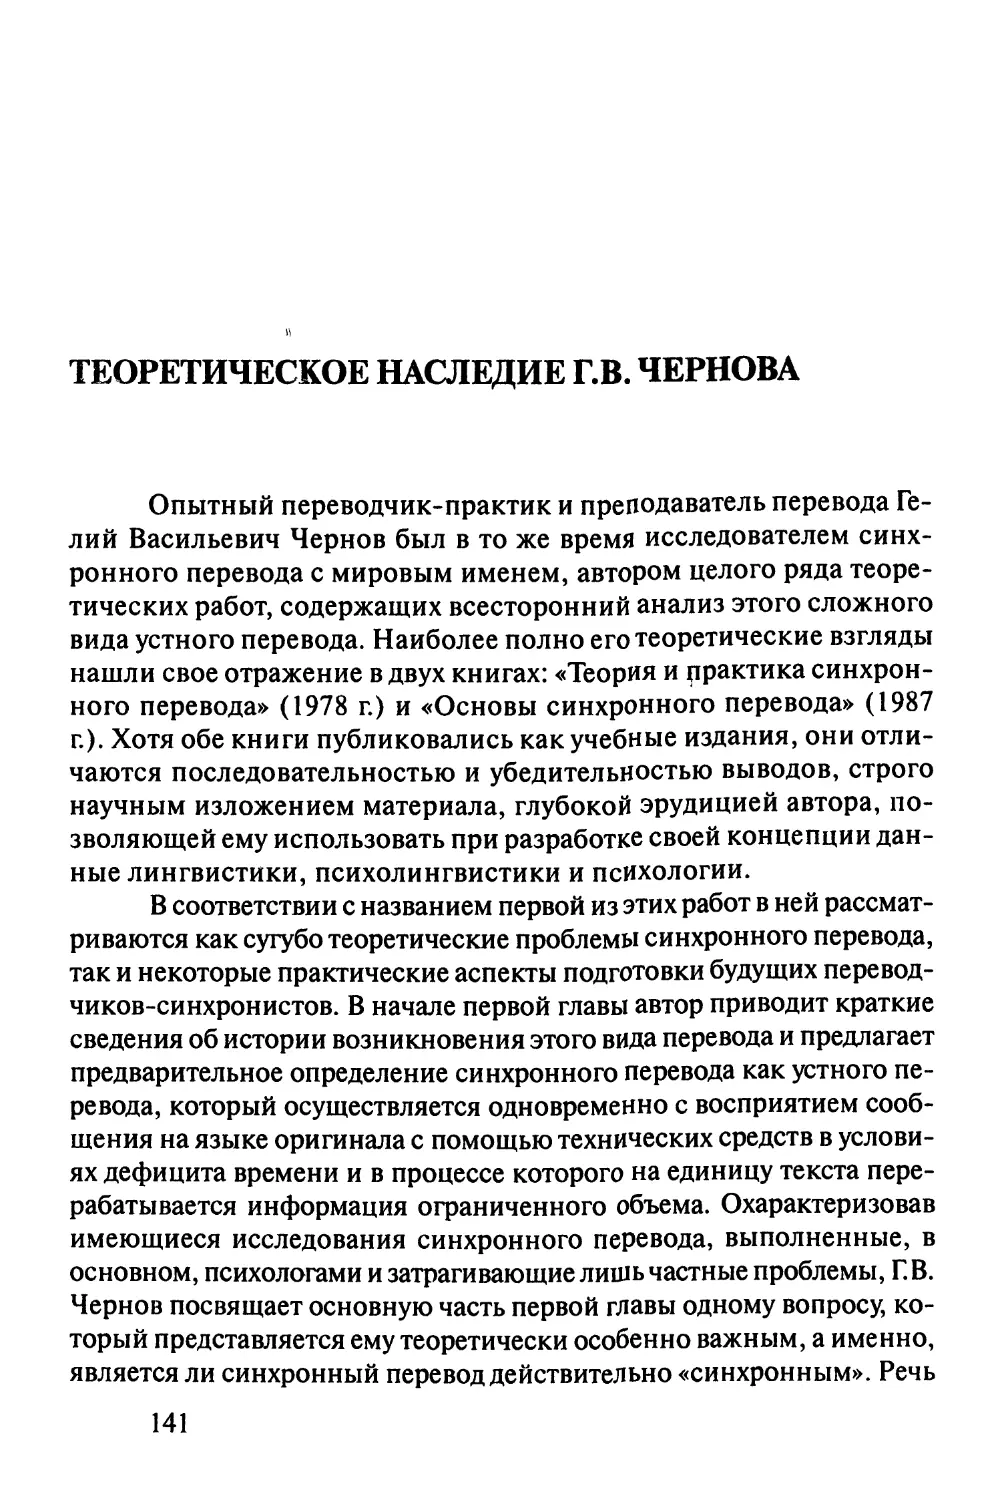 Теоретическое наследие Г.В.Чернова